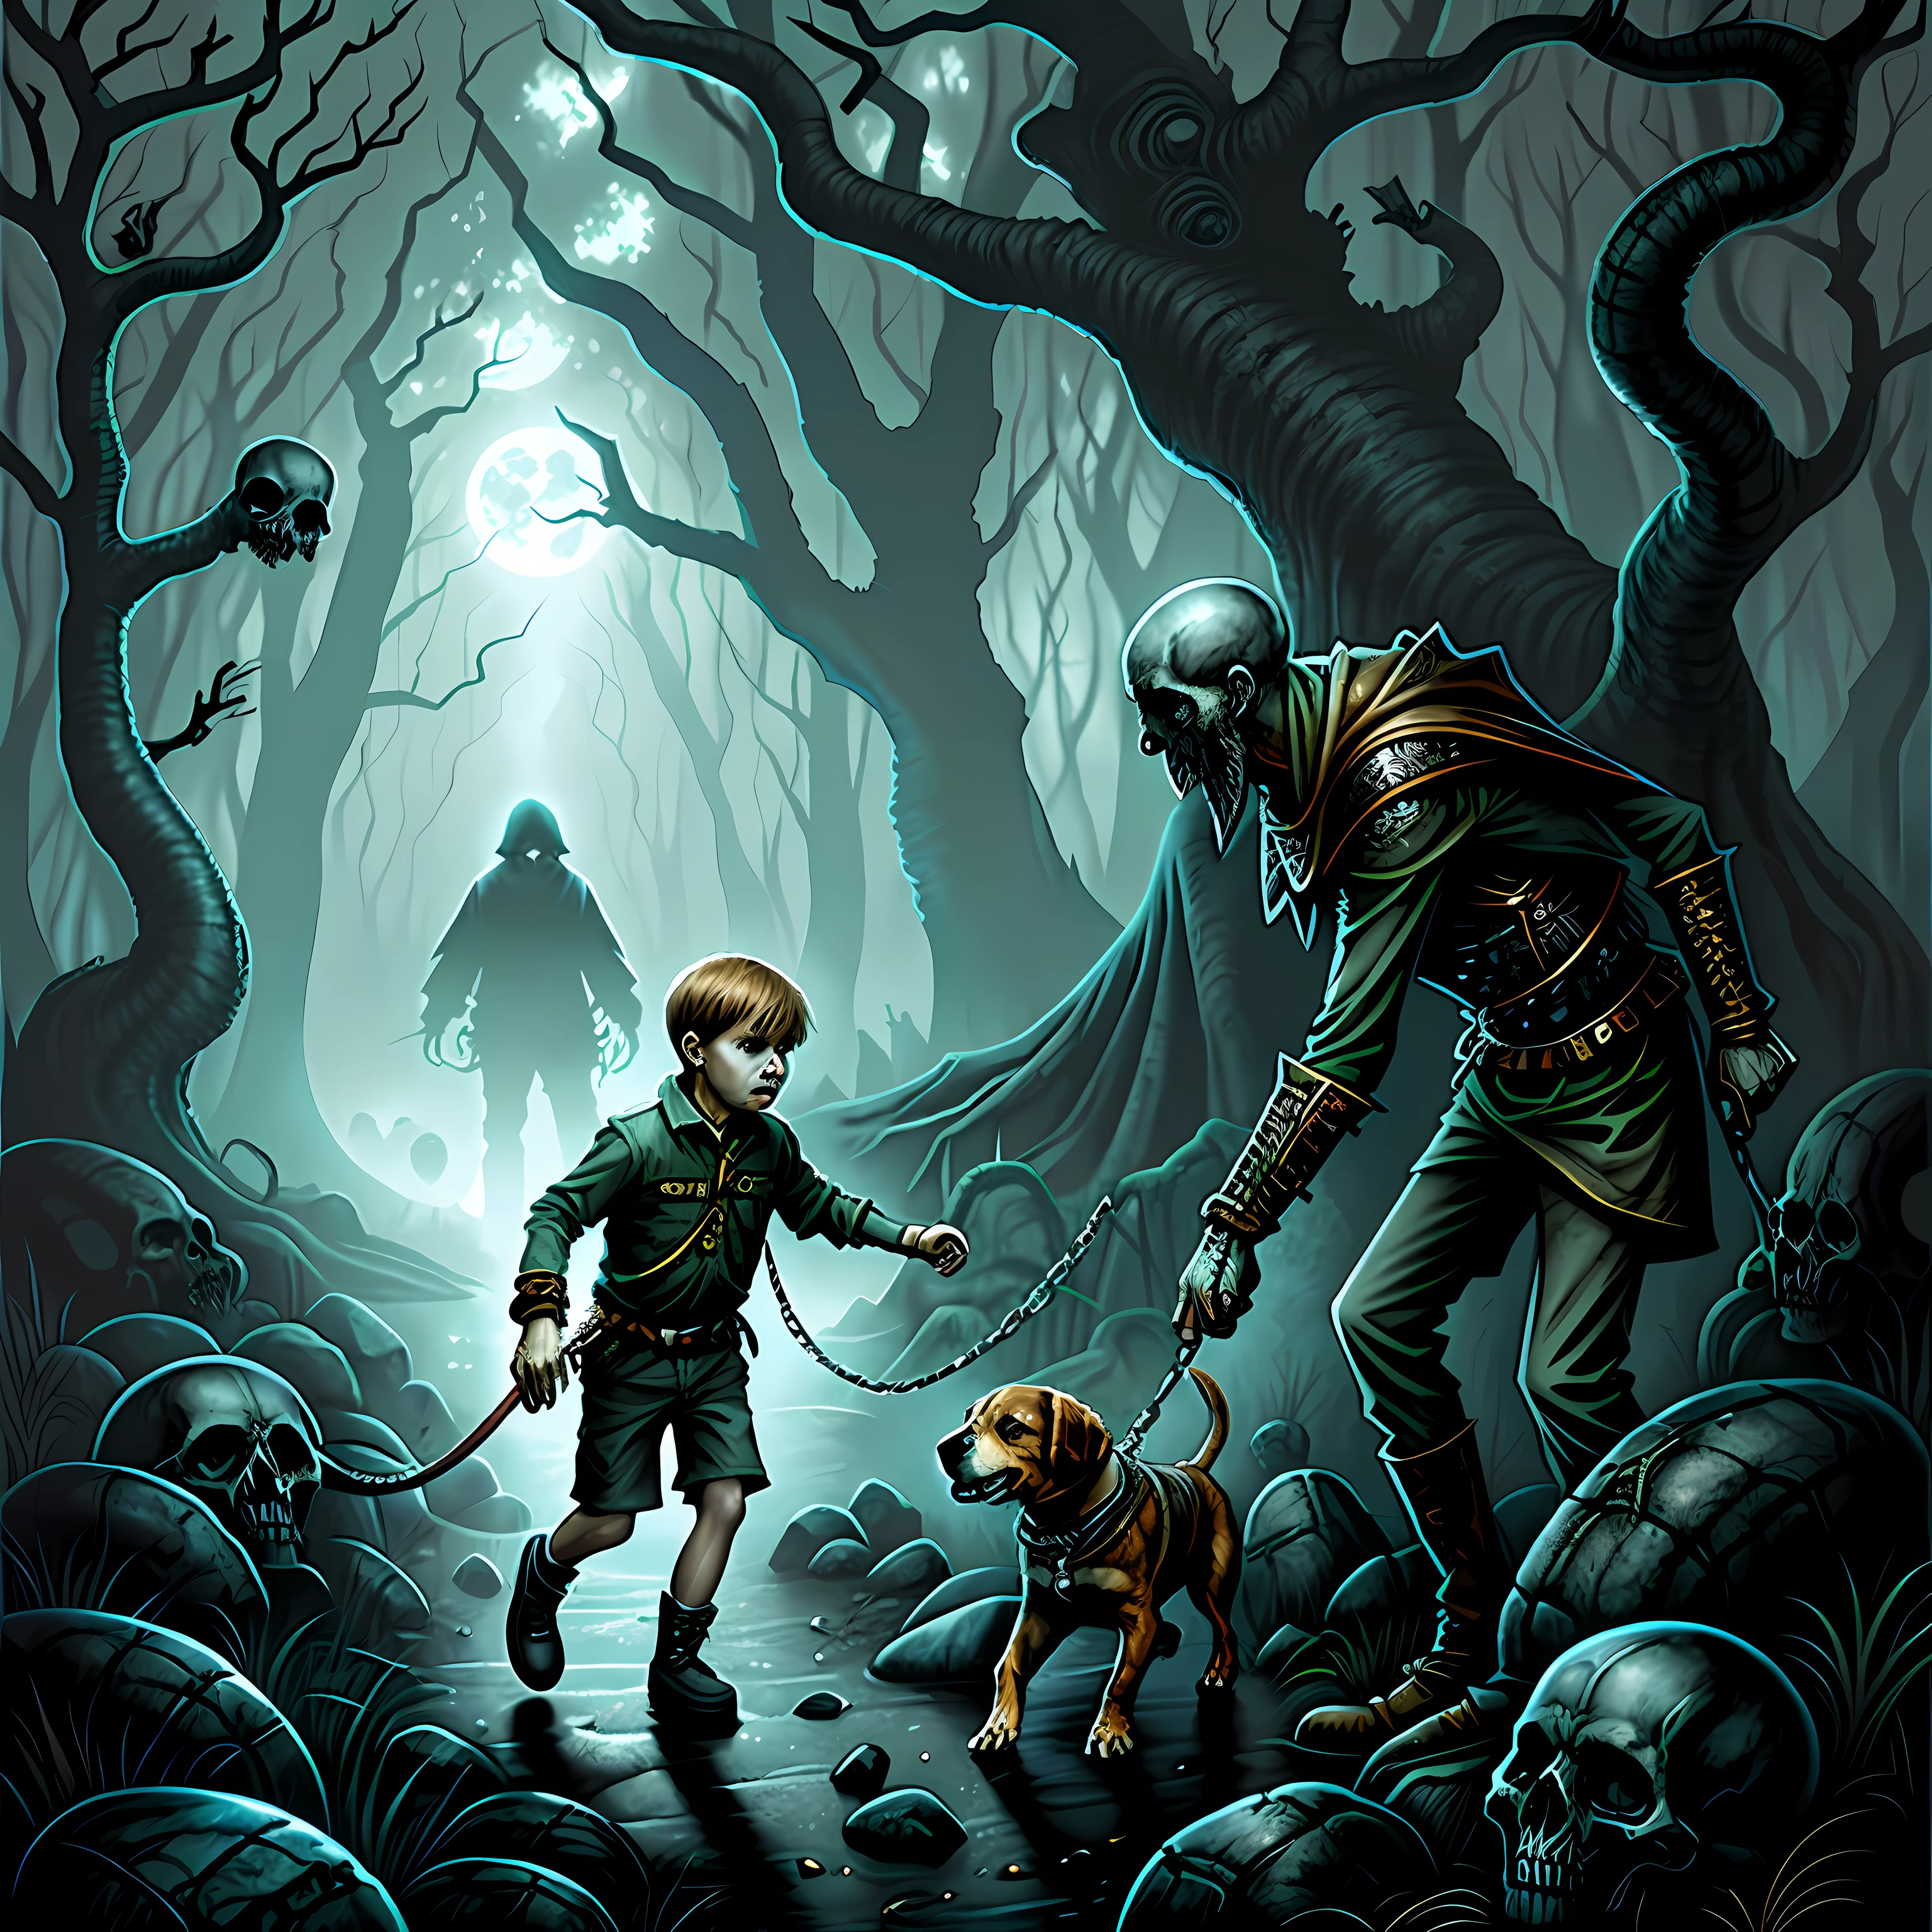 一個男孩牽著一隻小獵犬穿過一片被頭骨和靈魂困擾的森林. 恐怖藝術, 超現實主義 , 超詳細, 彩色繪圖, 丹·西格雷夫插圖.